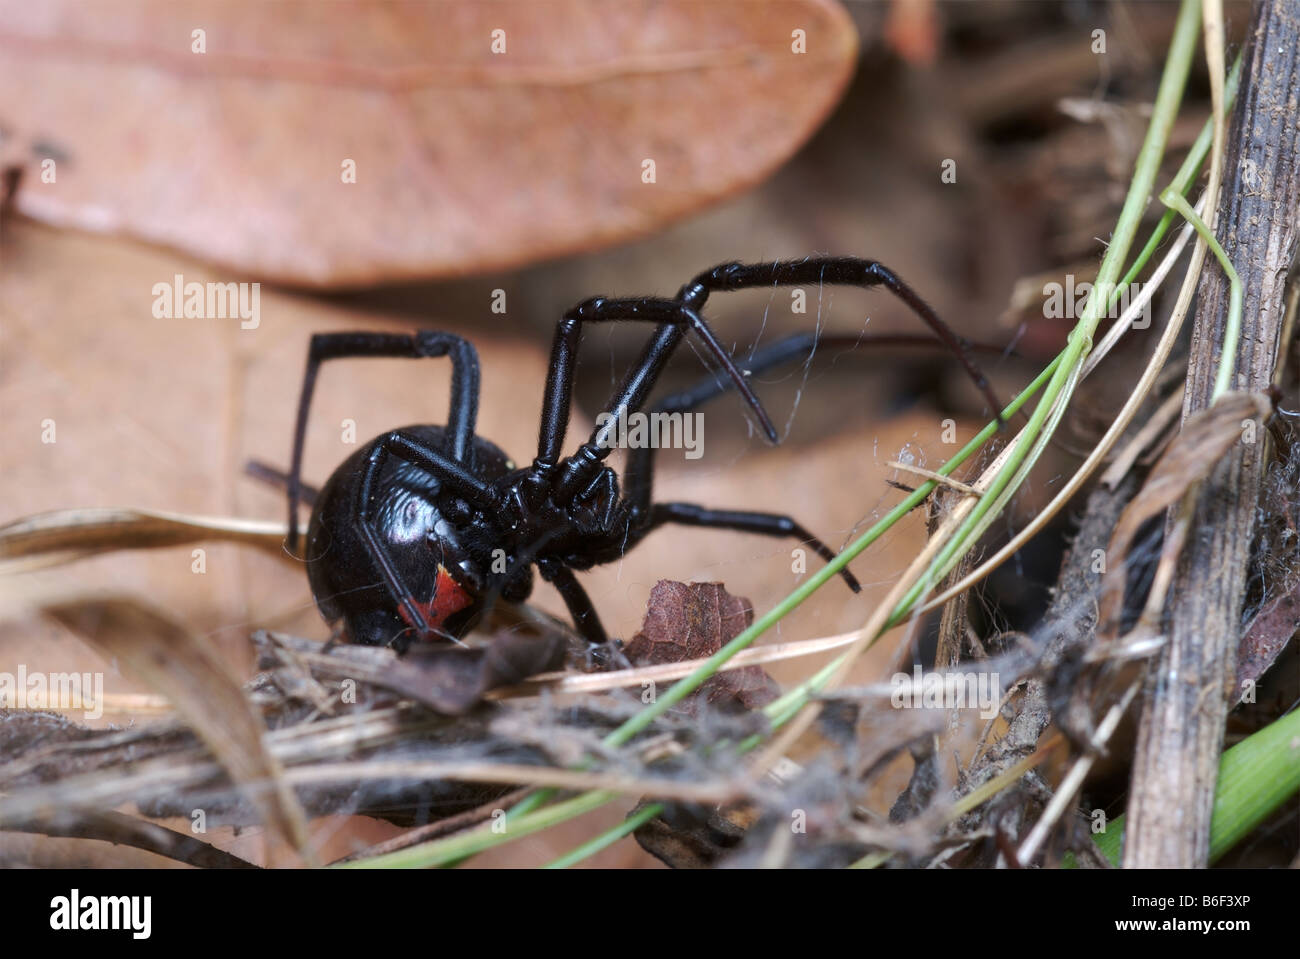 Weibliche schwarze Witwe Spinne zeigt rote Sanduhr Markierung auf der Unterseite des seinen Bauch. Stockfoto